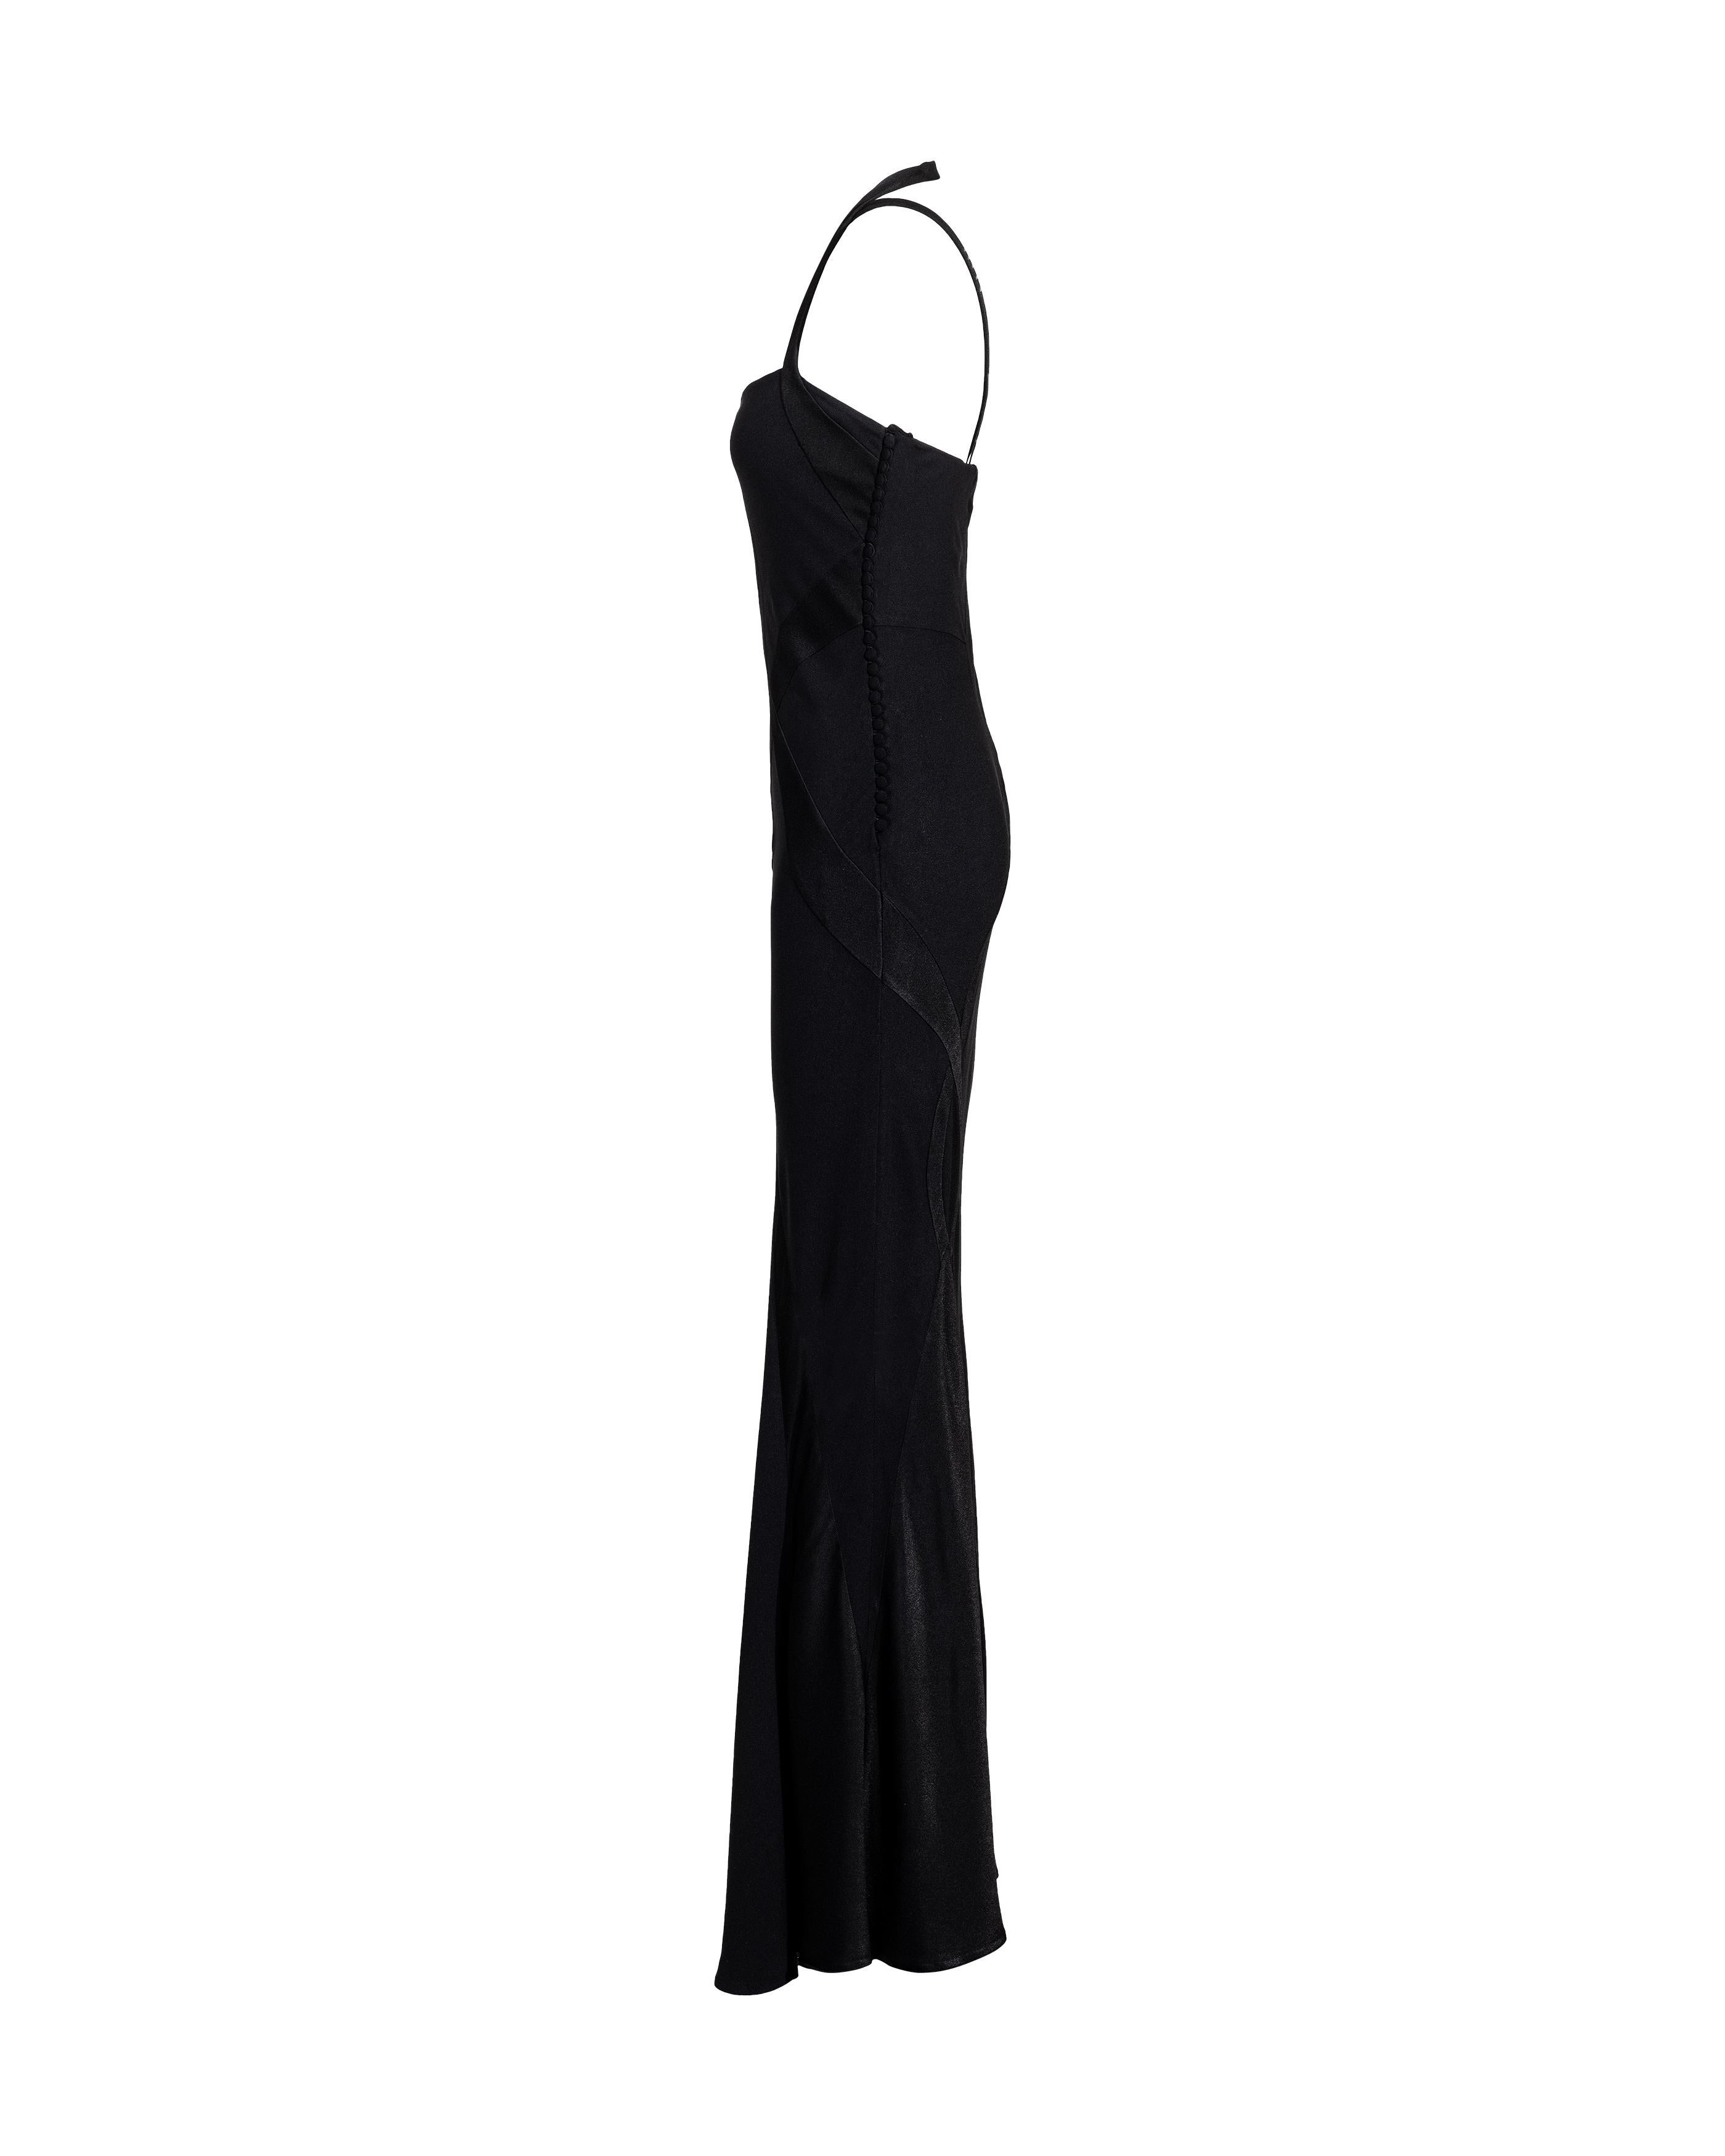 Women's A/W 2004 Christian Dior Cutout Black Silk Gown